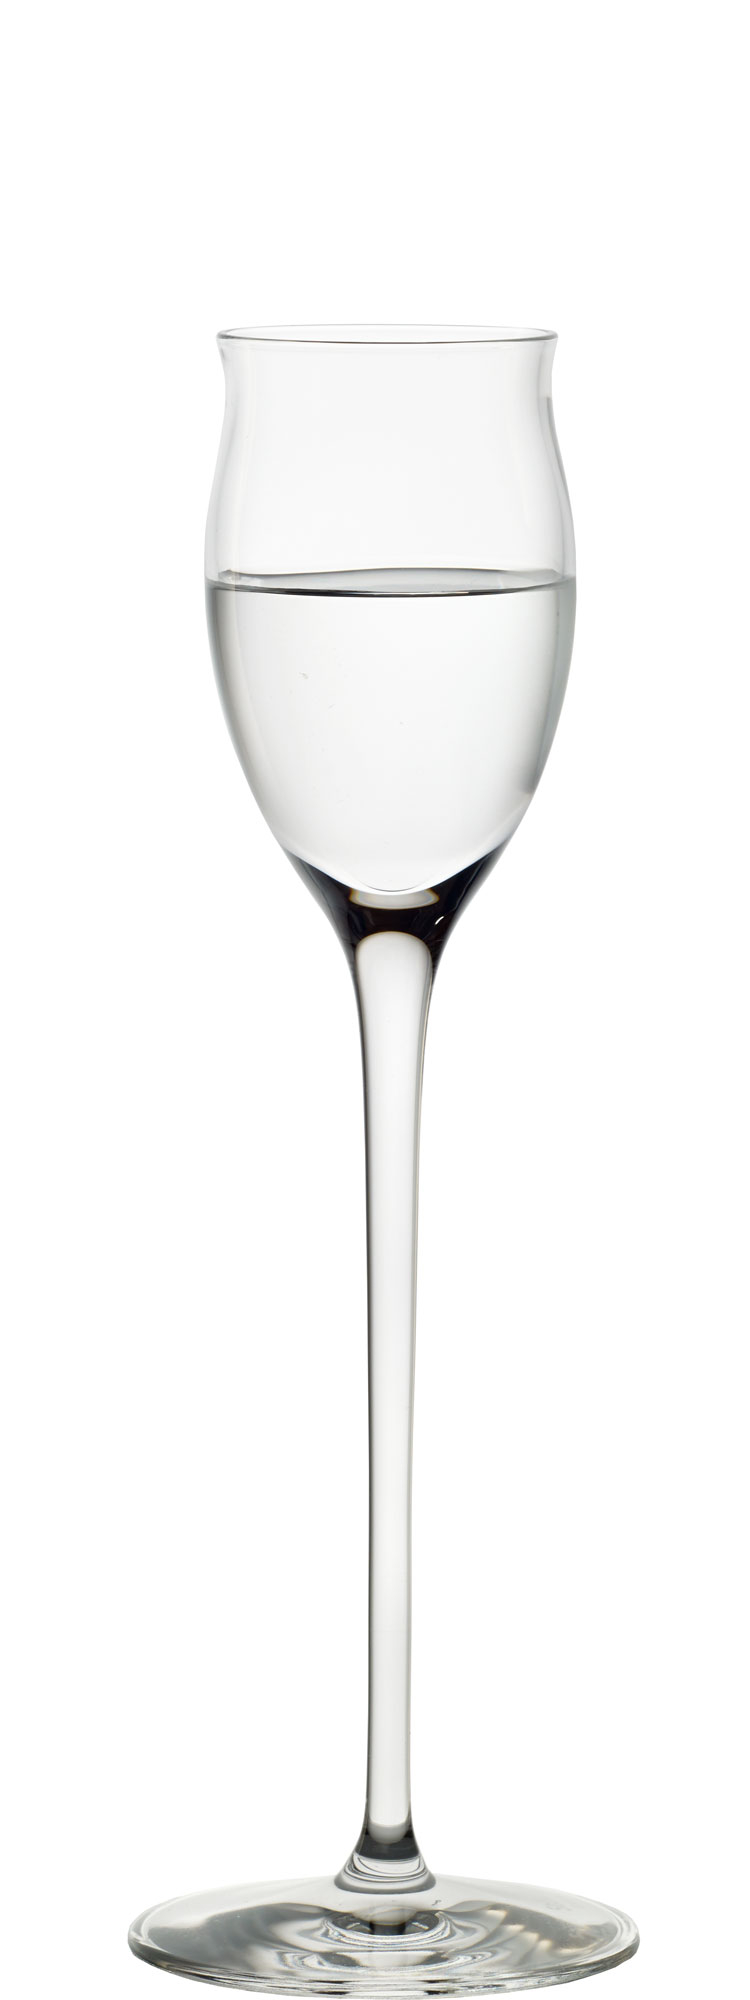 Edelbrand/Grappa Glas Quatrophil, Stölzle - 65ml (1 Stk.)